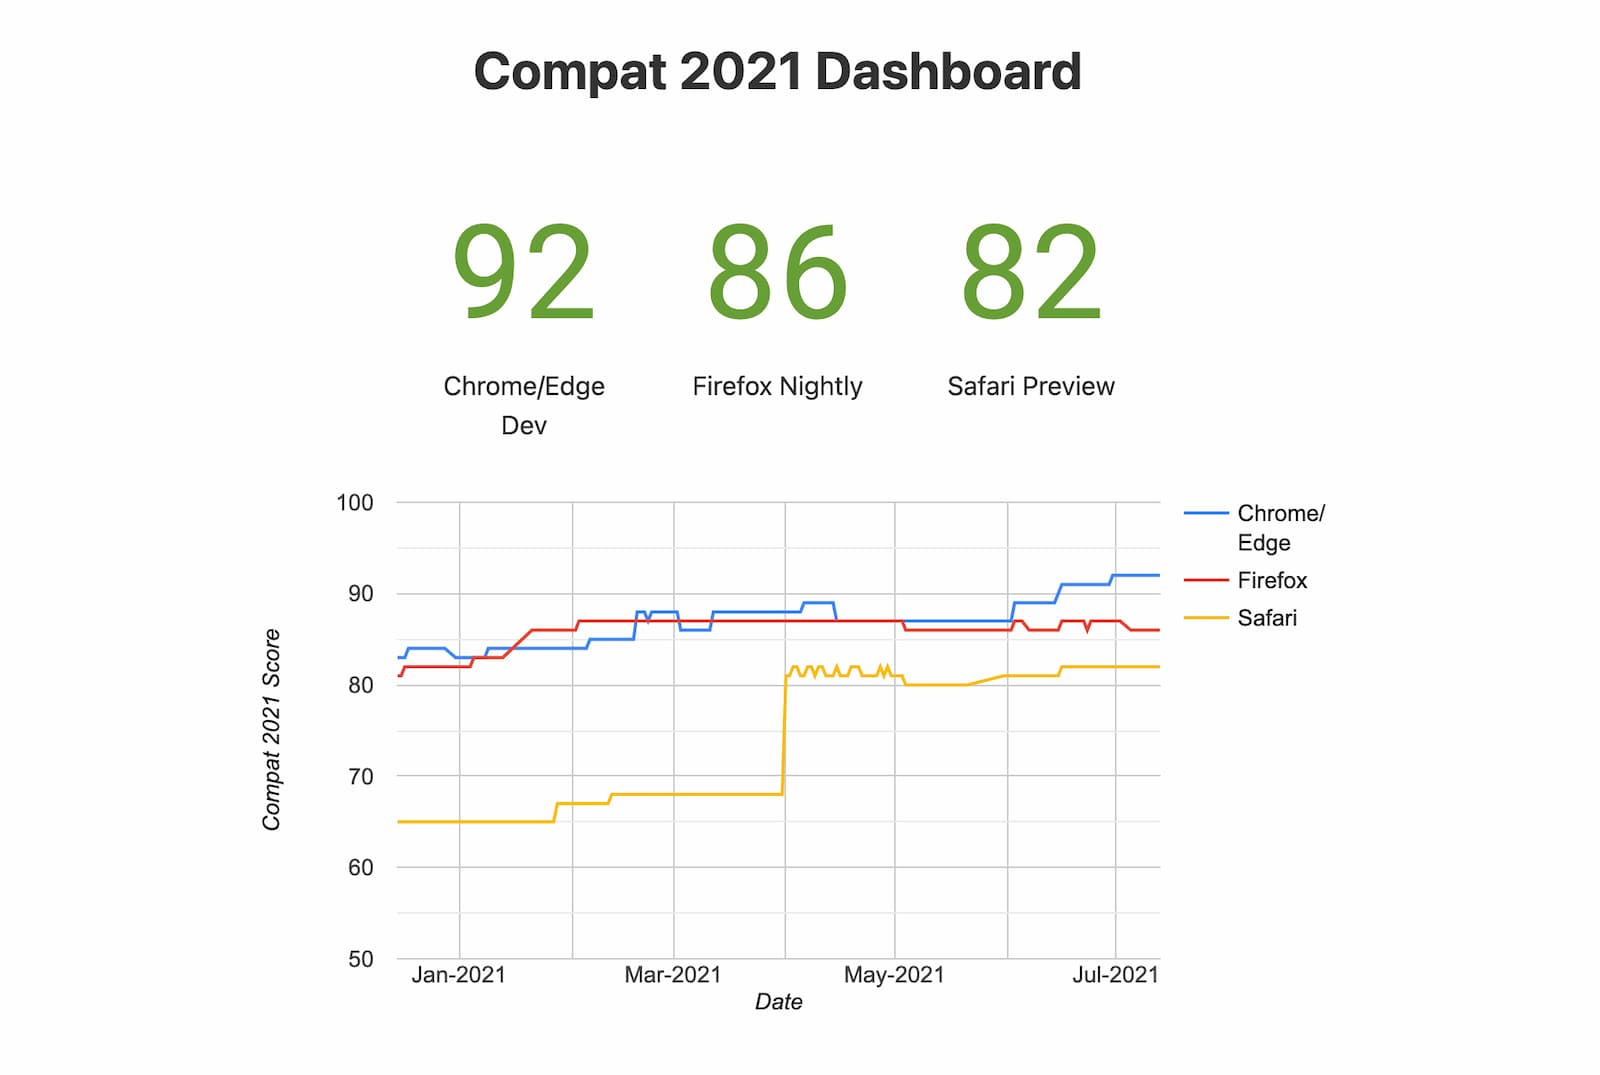 कैप्शन: Compat 2021 डैशबोर्ड का स्नैपशॉट (एक्सपेरिमेंट वाले ब्राउज़र)